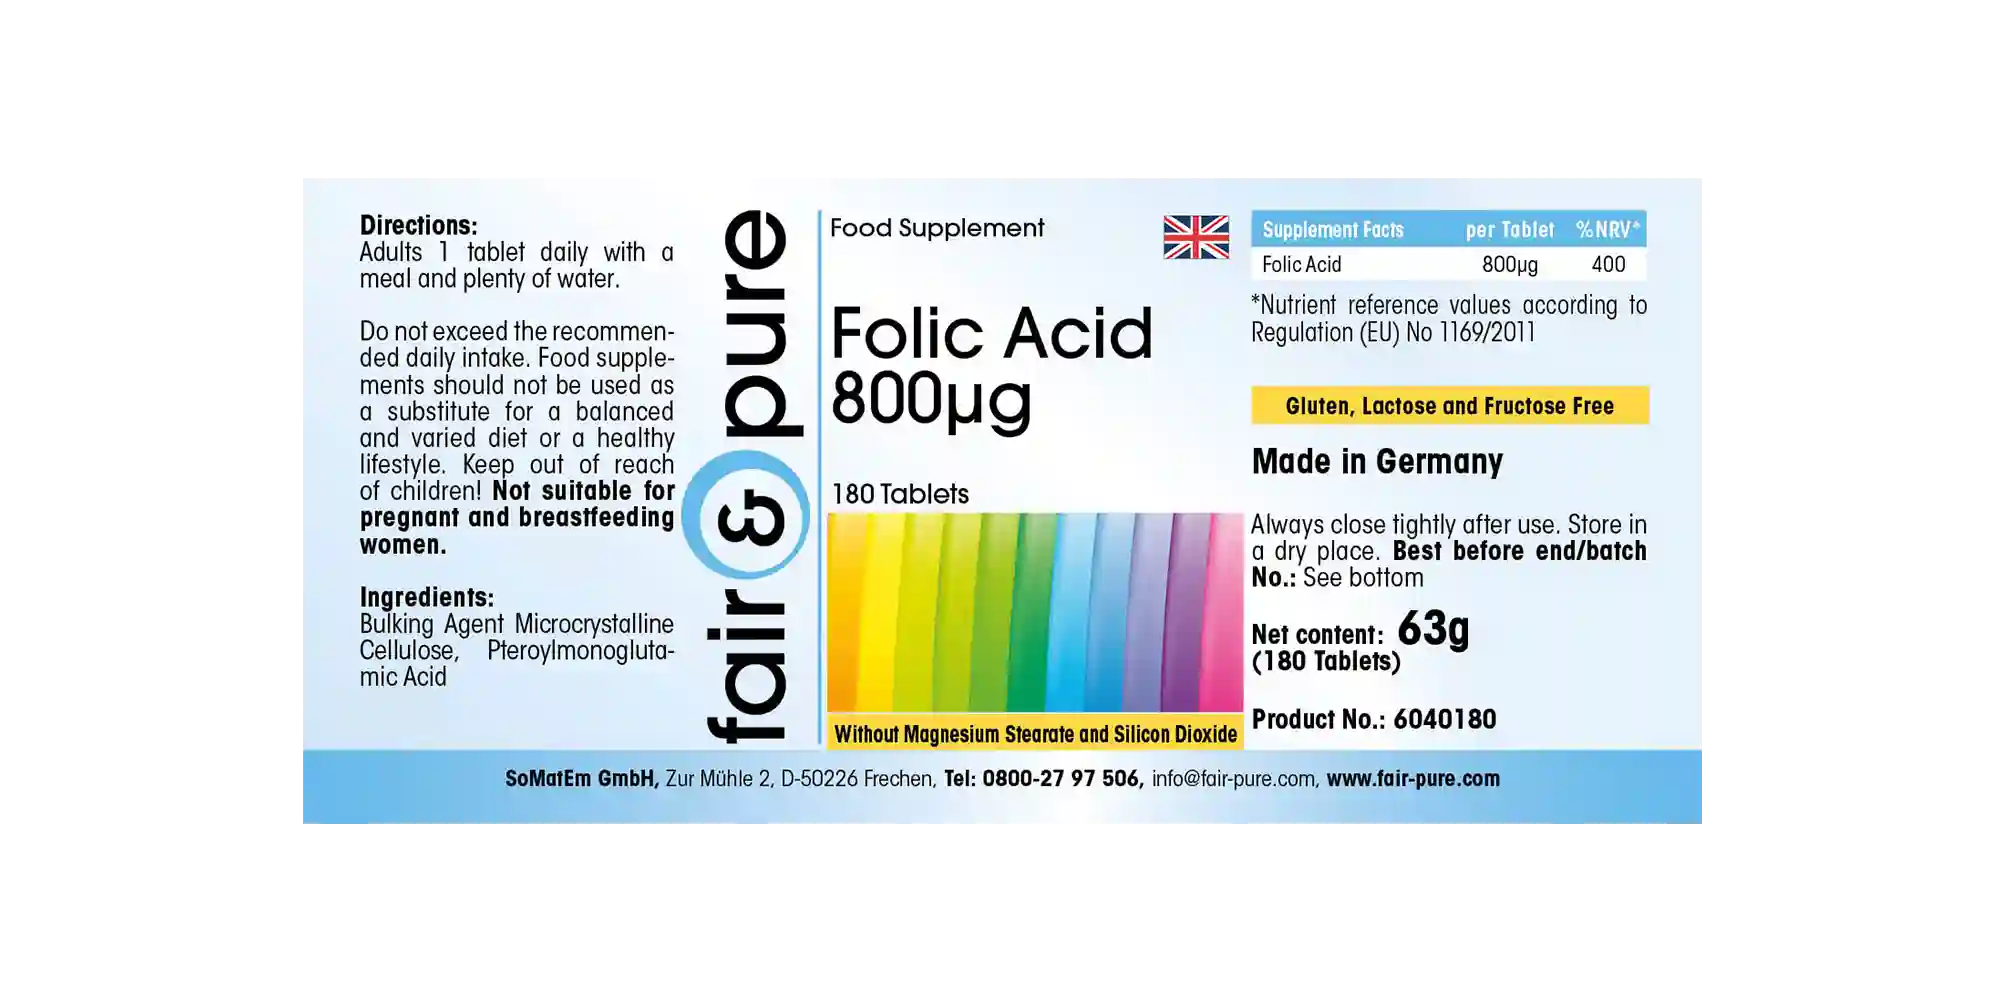 Acido folico 800µg